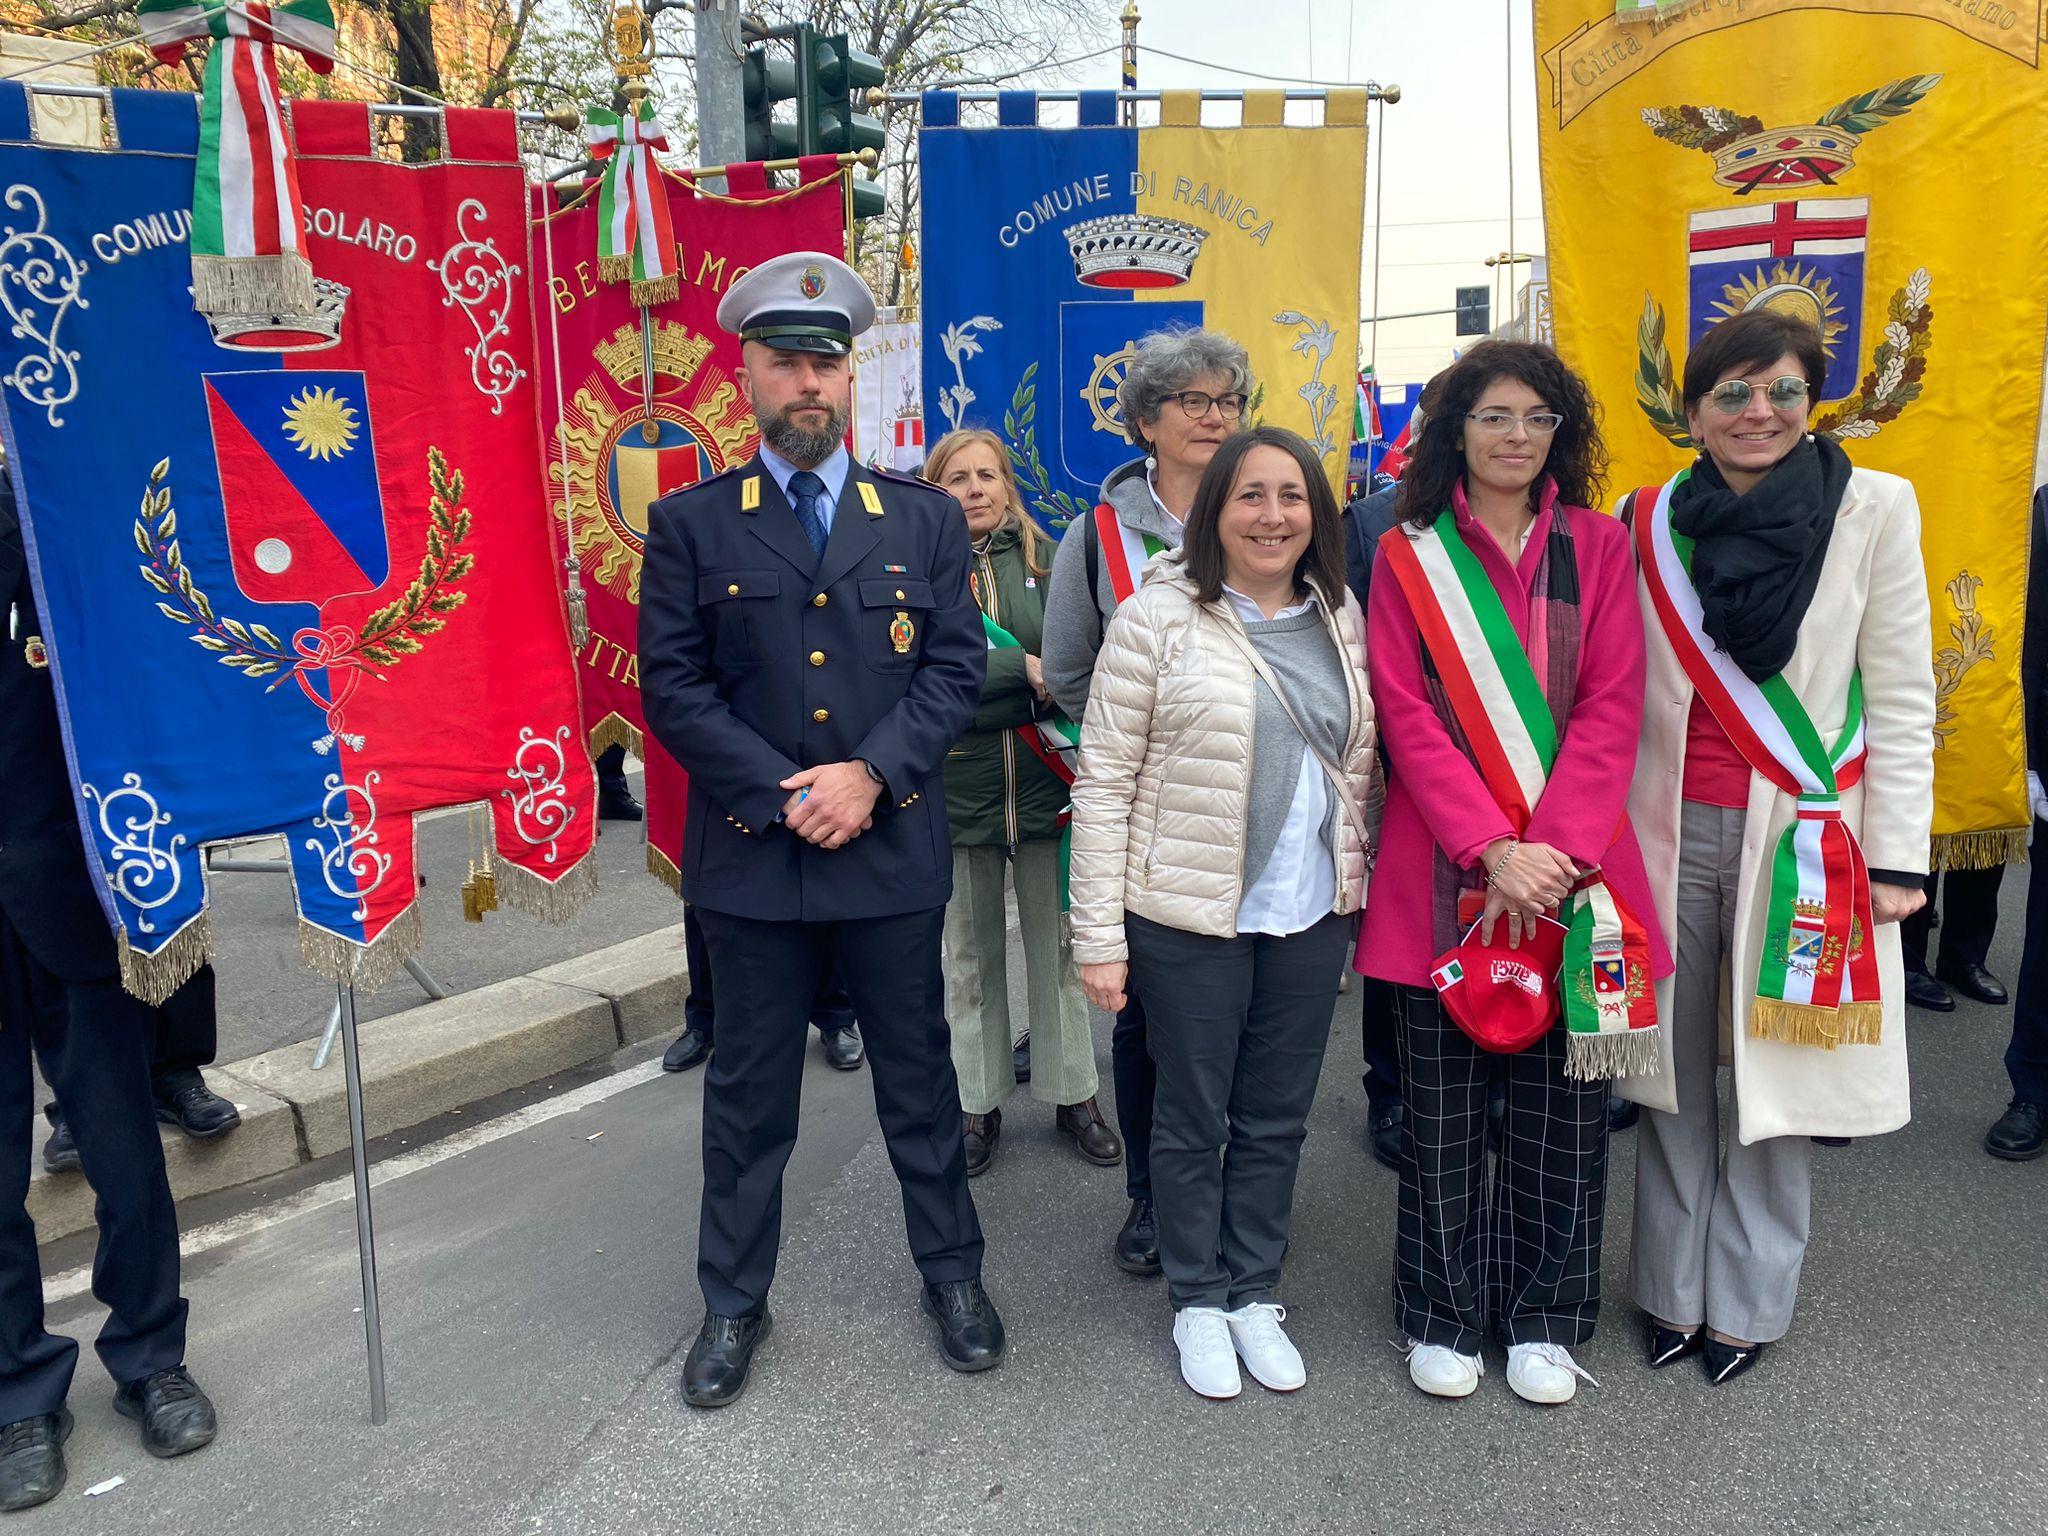 Giornata della Memoria e dell’impegno contro la mafia, Solaro in corteo a Milano con il sindaco